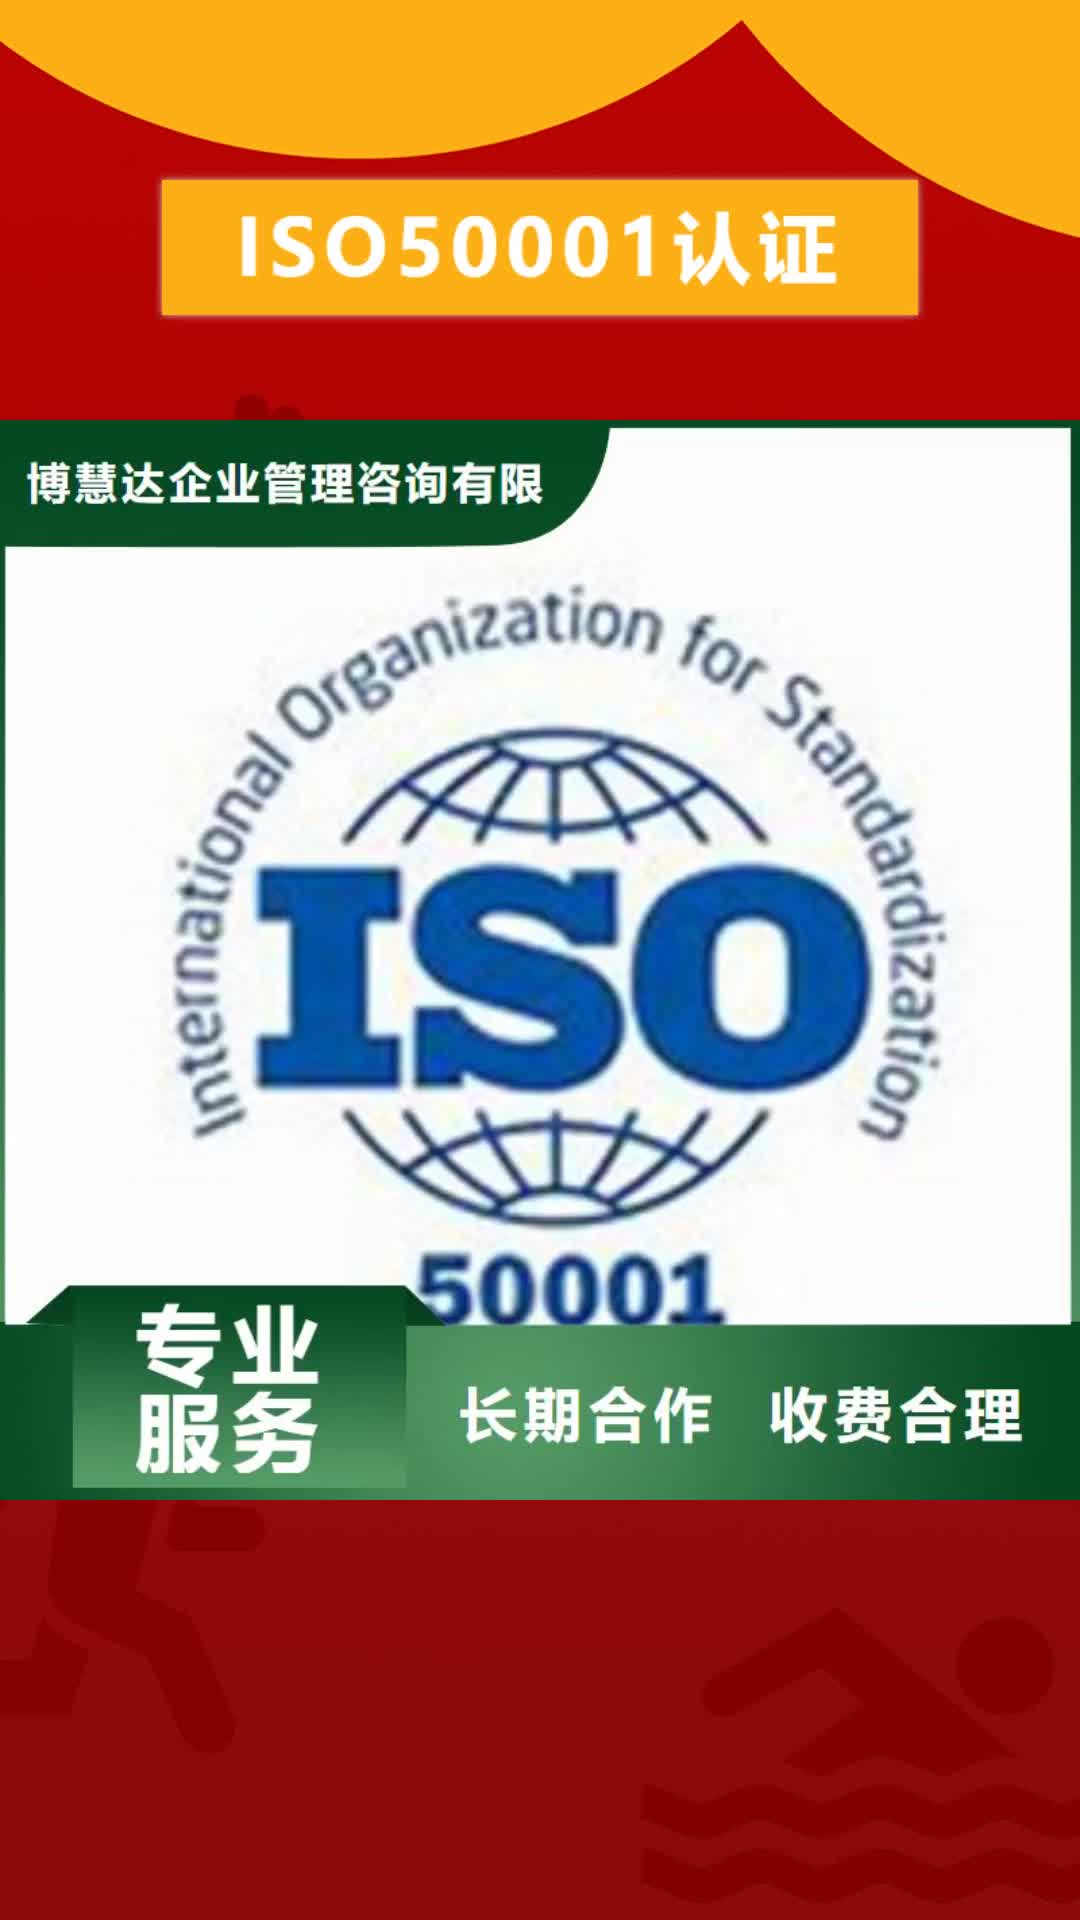 阿坝 ISO50001认证 【ISO9001\ISO9000\ISO14001认证】专业可靠